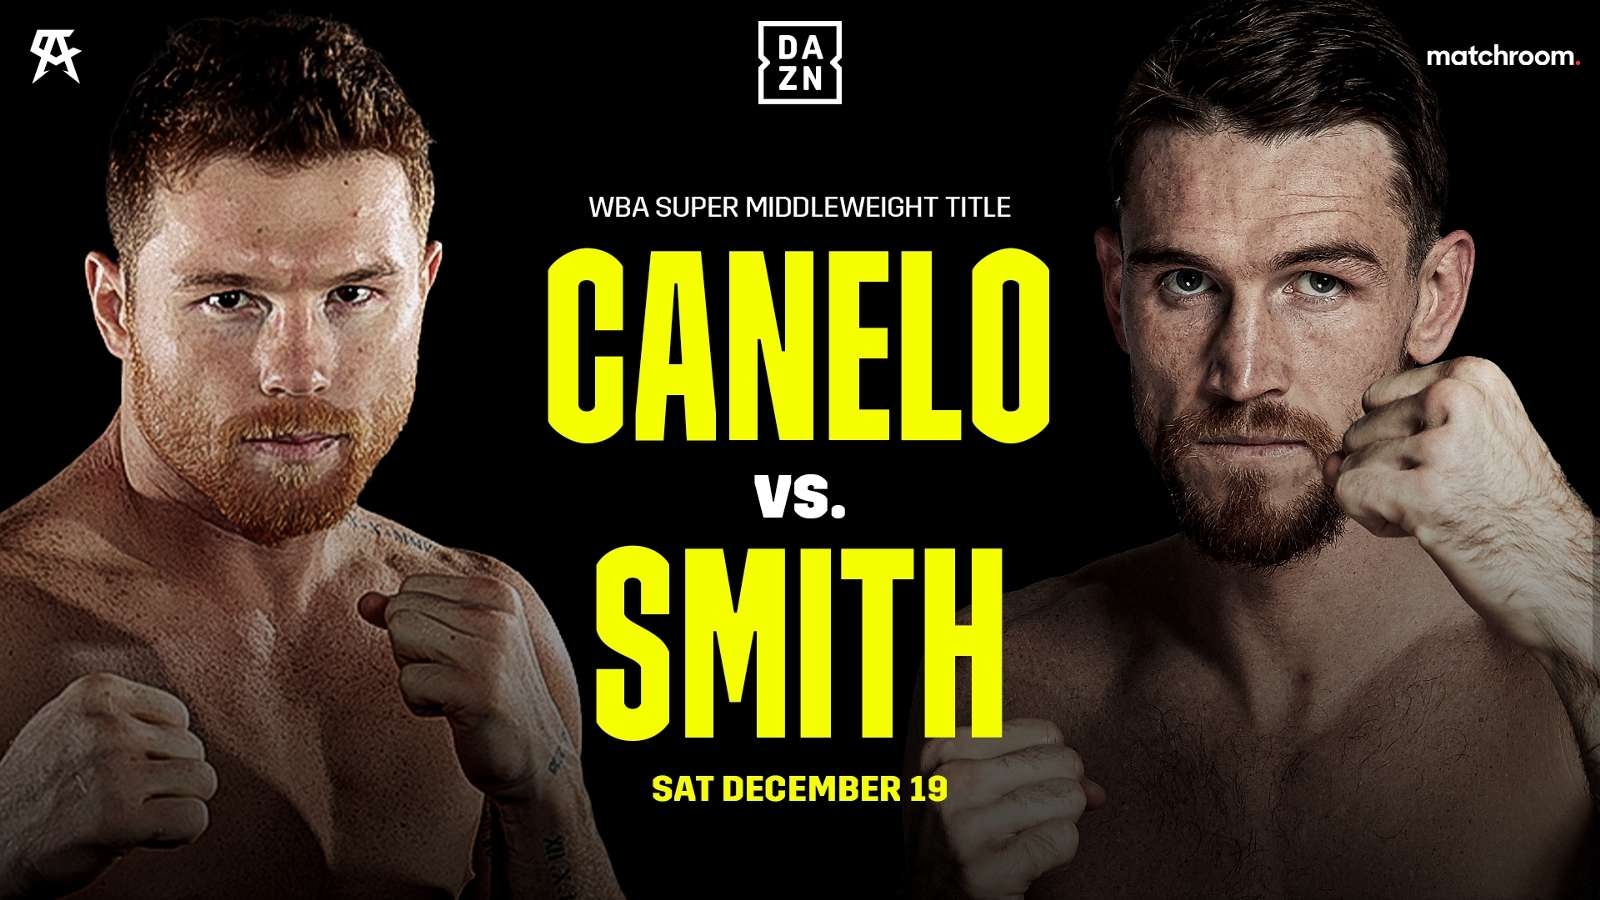 Callum Smith vs Canelo Alvarez fight info, fighter stats, date